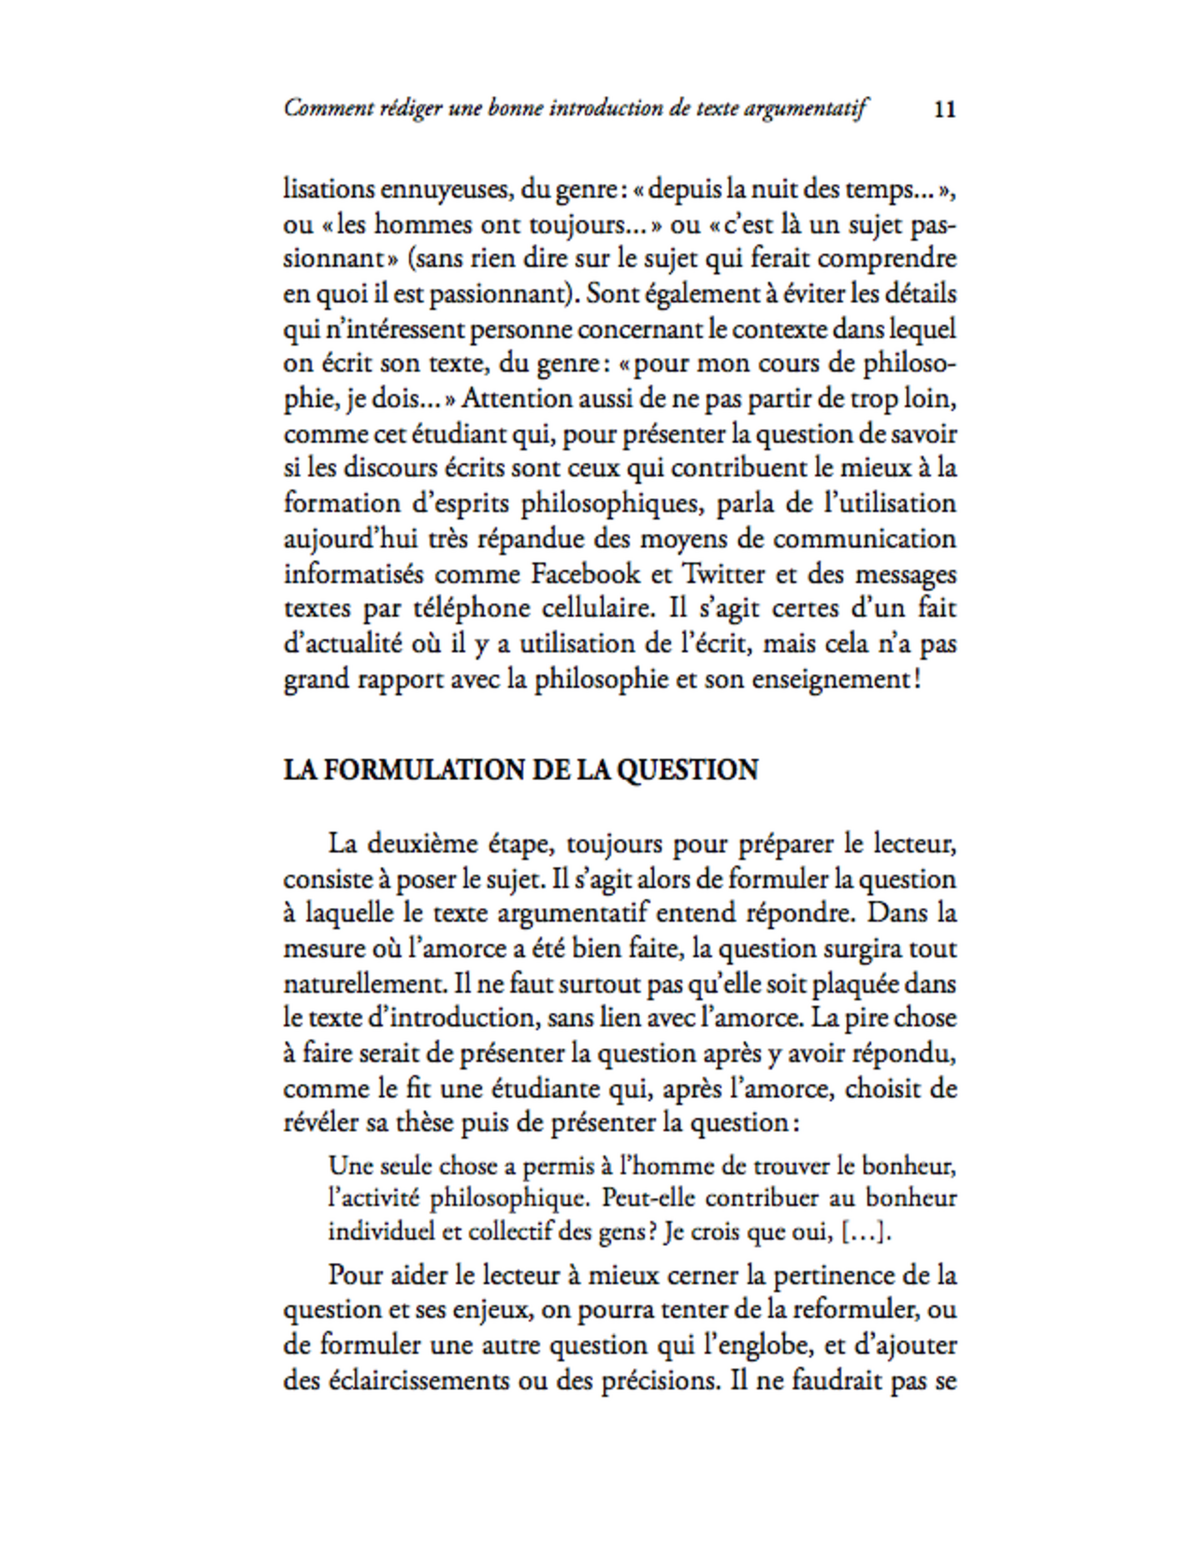 Le Texte Argumentatif En Philosophie L Brunet 340 410 Al Studocu